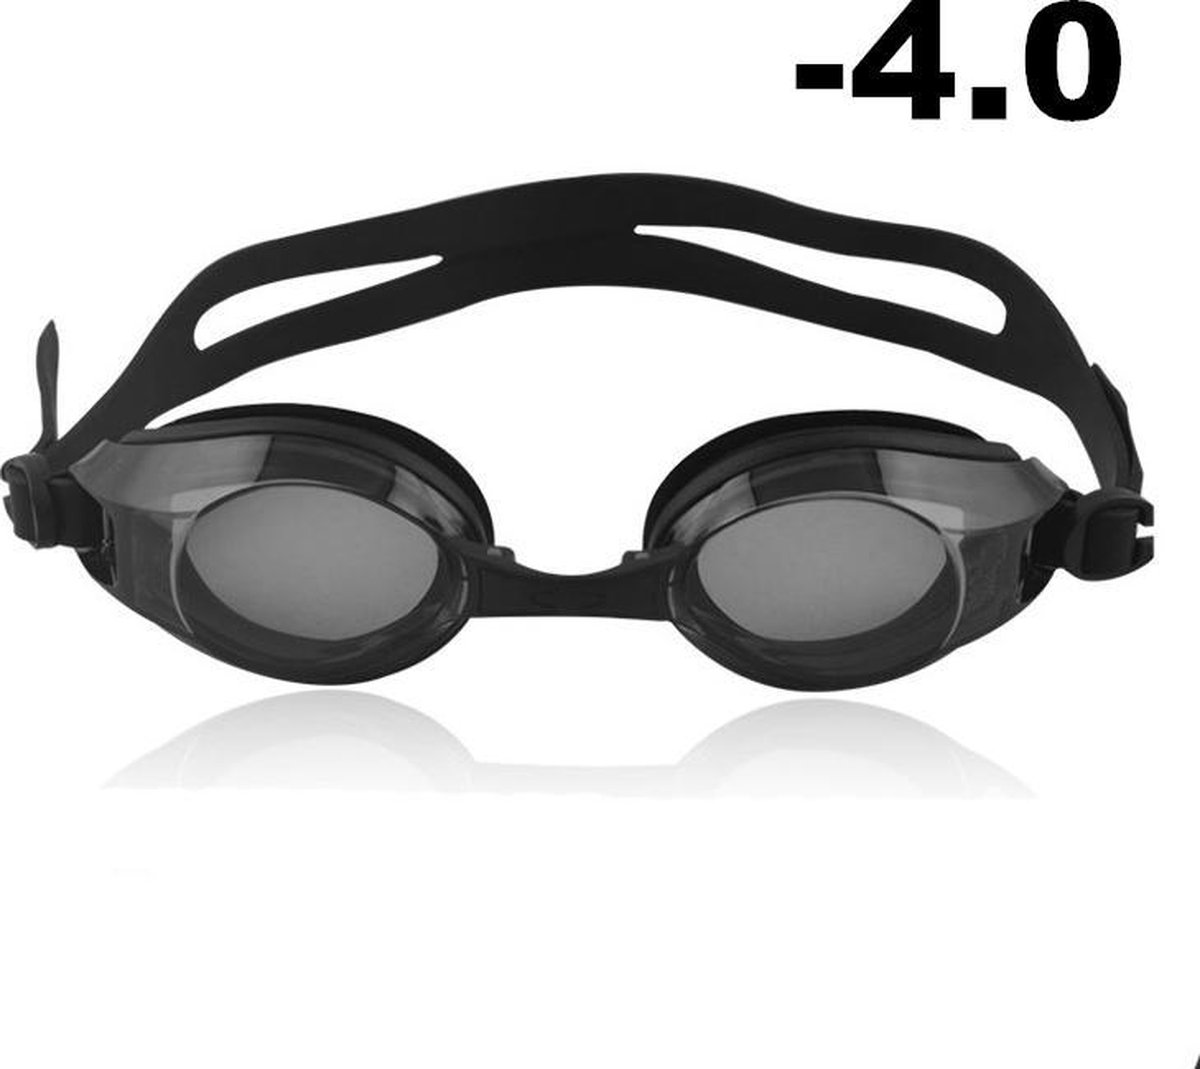 Zwembril op sterkte - myopia (-4.0)